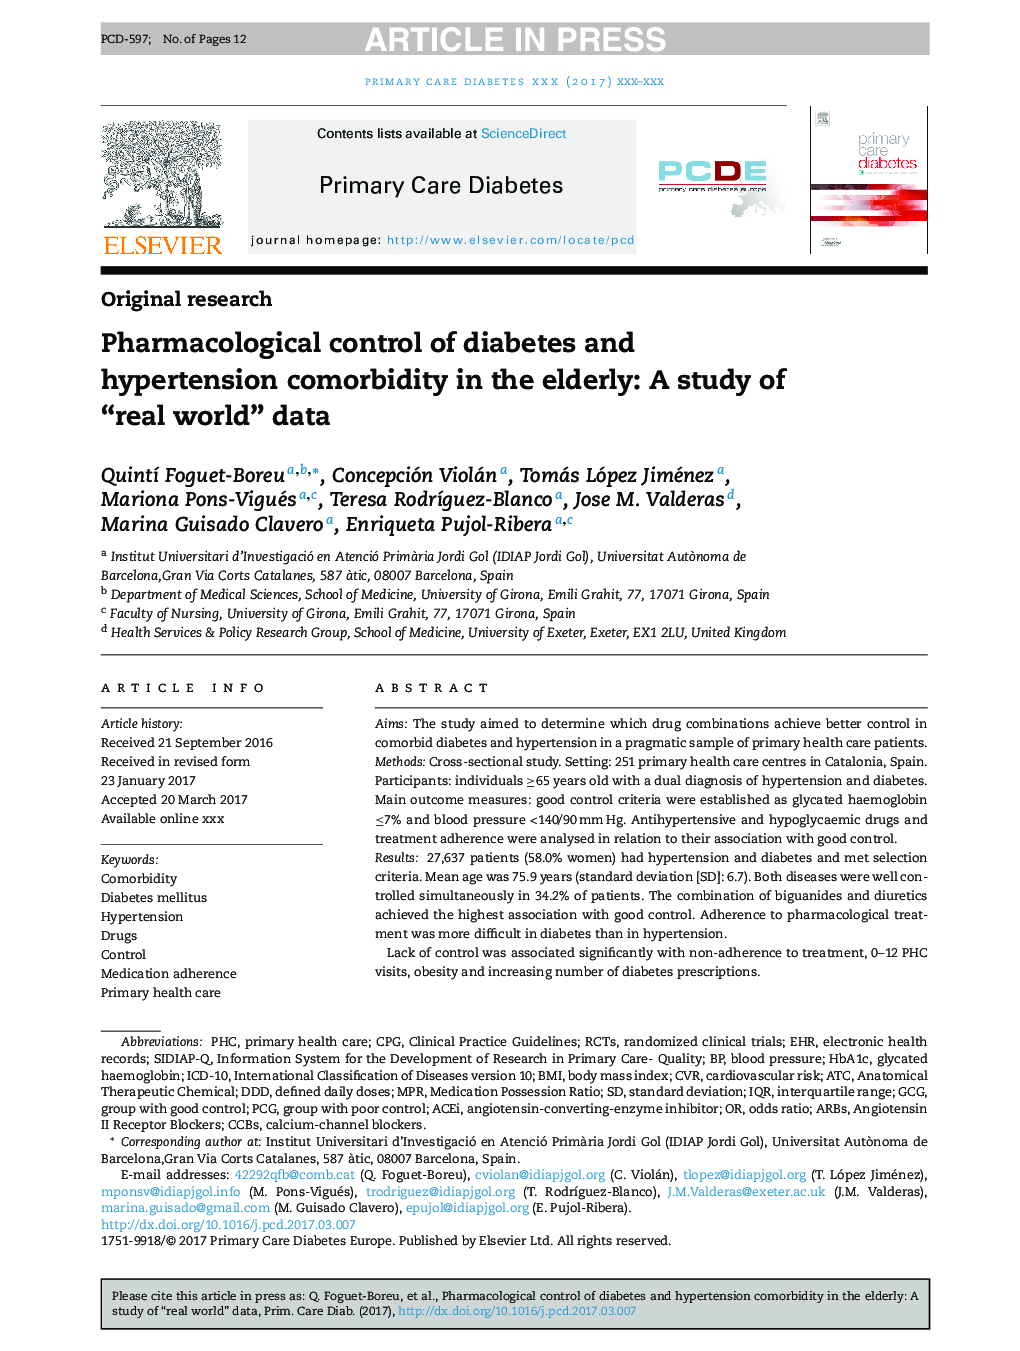 کنترل فارماکولوژیک دیابت و کمبود بالای پرفشاری خون در سالمندان: مطالعهی دنیای واقعی داده ها 